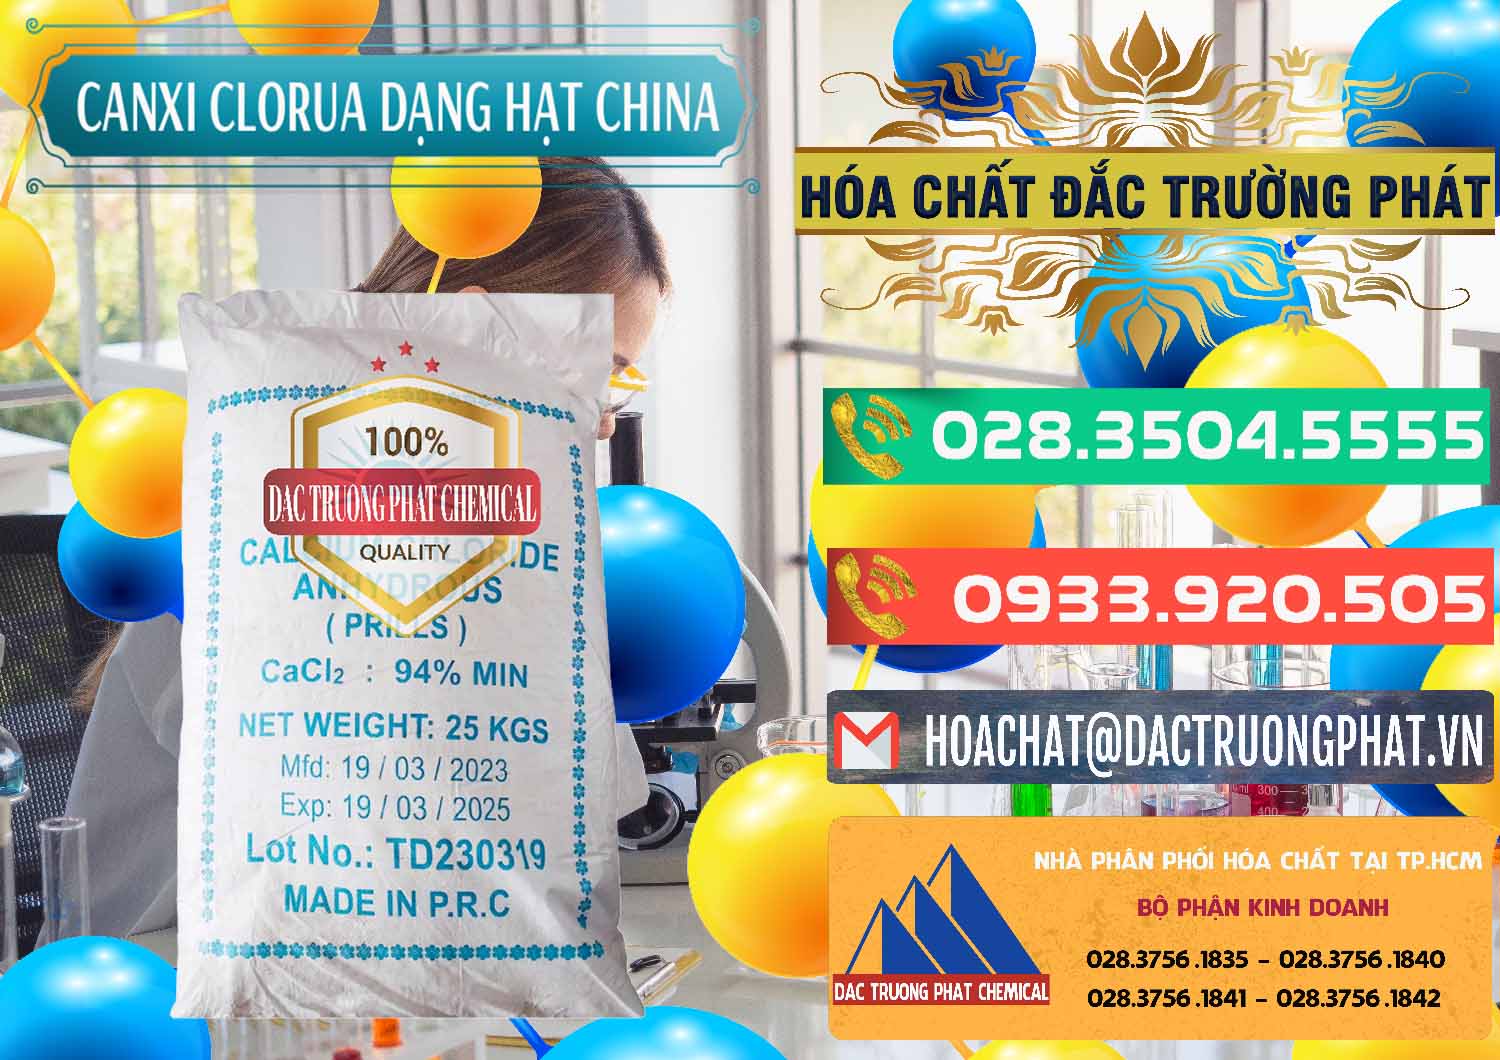 Chuyên bán & phân phối CaCl2 – Canxi Clorua 94% Dạng Hạt Trung Quốc China - 0373 - Chuyên cung cấp ( phân phối ) hóa chất tại TP.HCM - congtyhoachat.com.vn